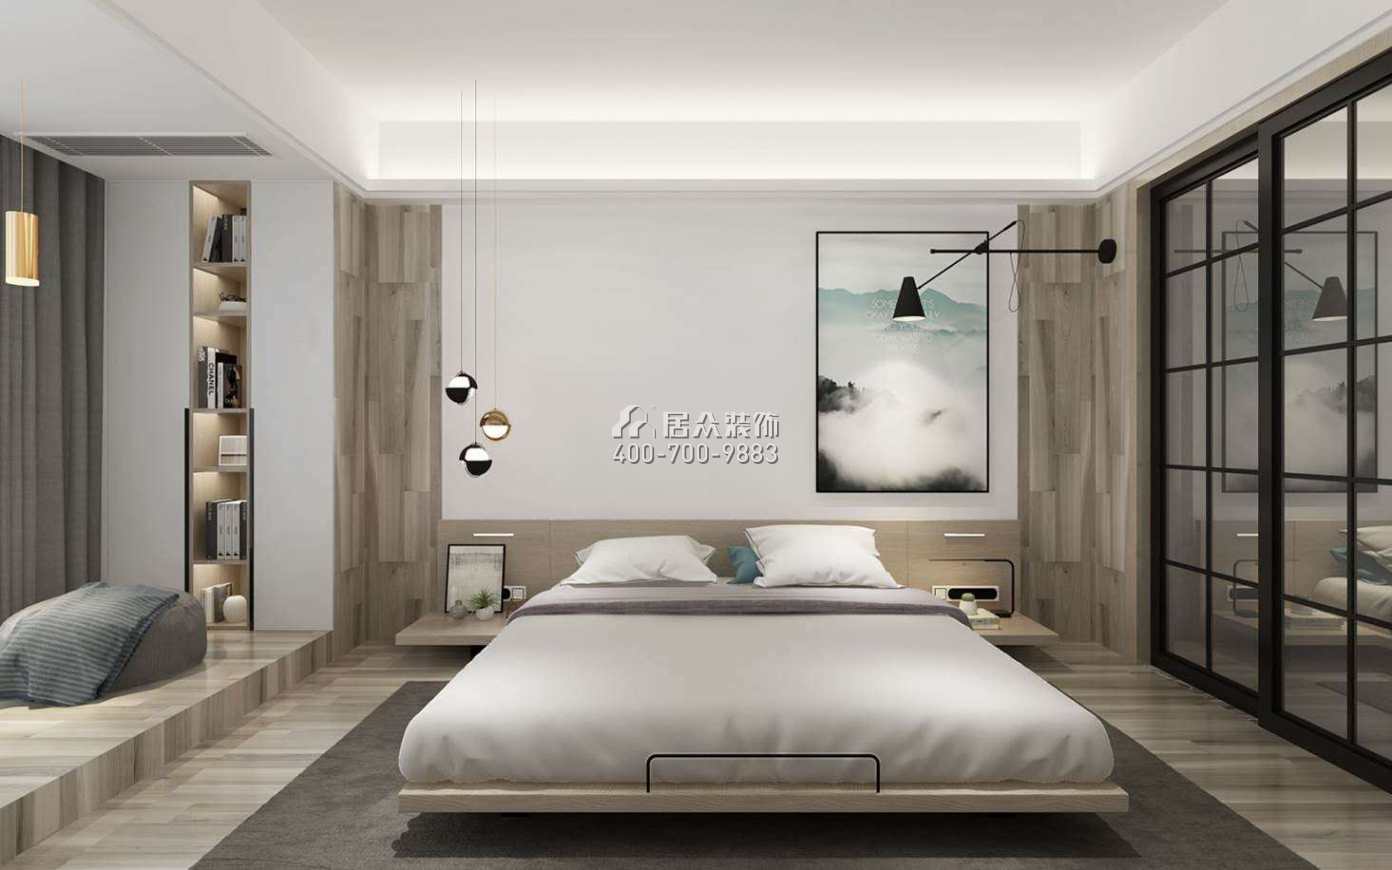 老西门155平方米北欧风格平层户型卧室装修效果图